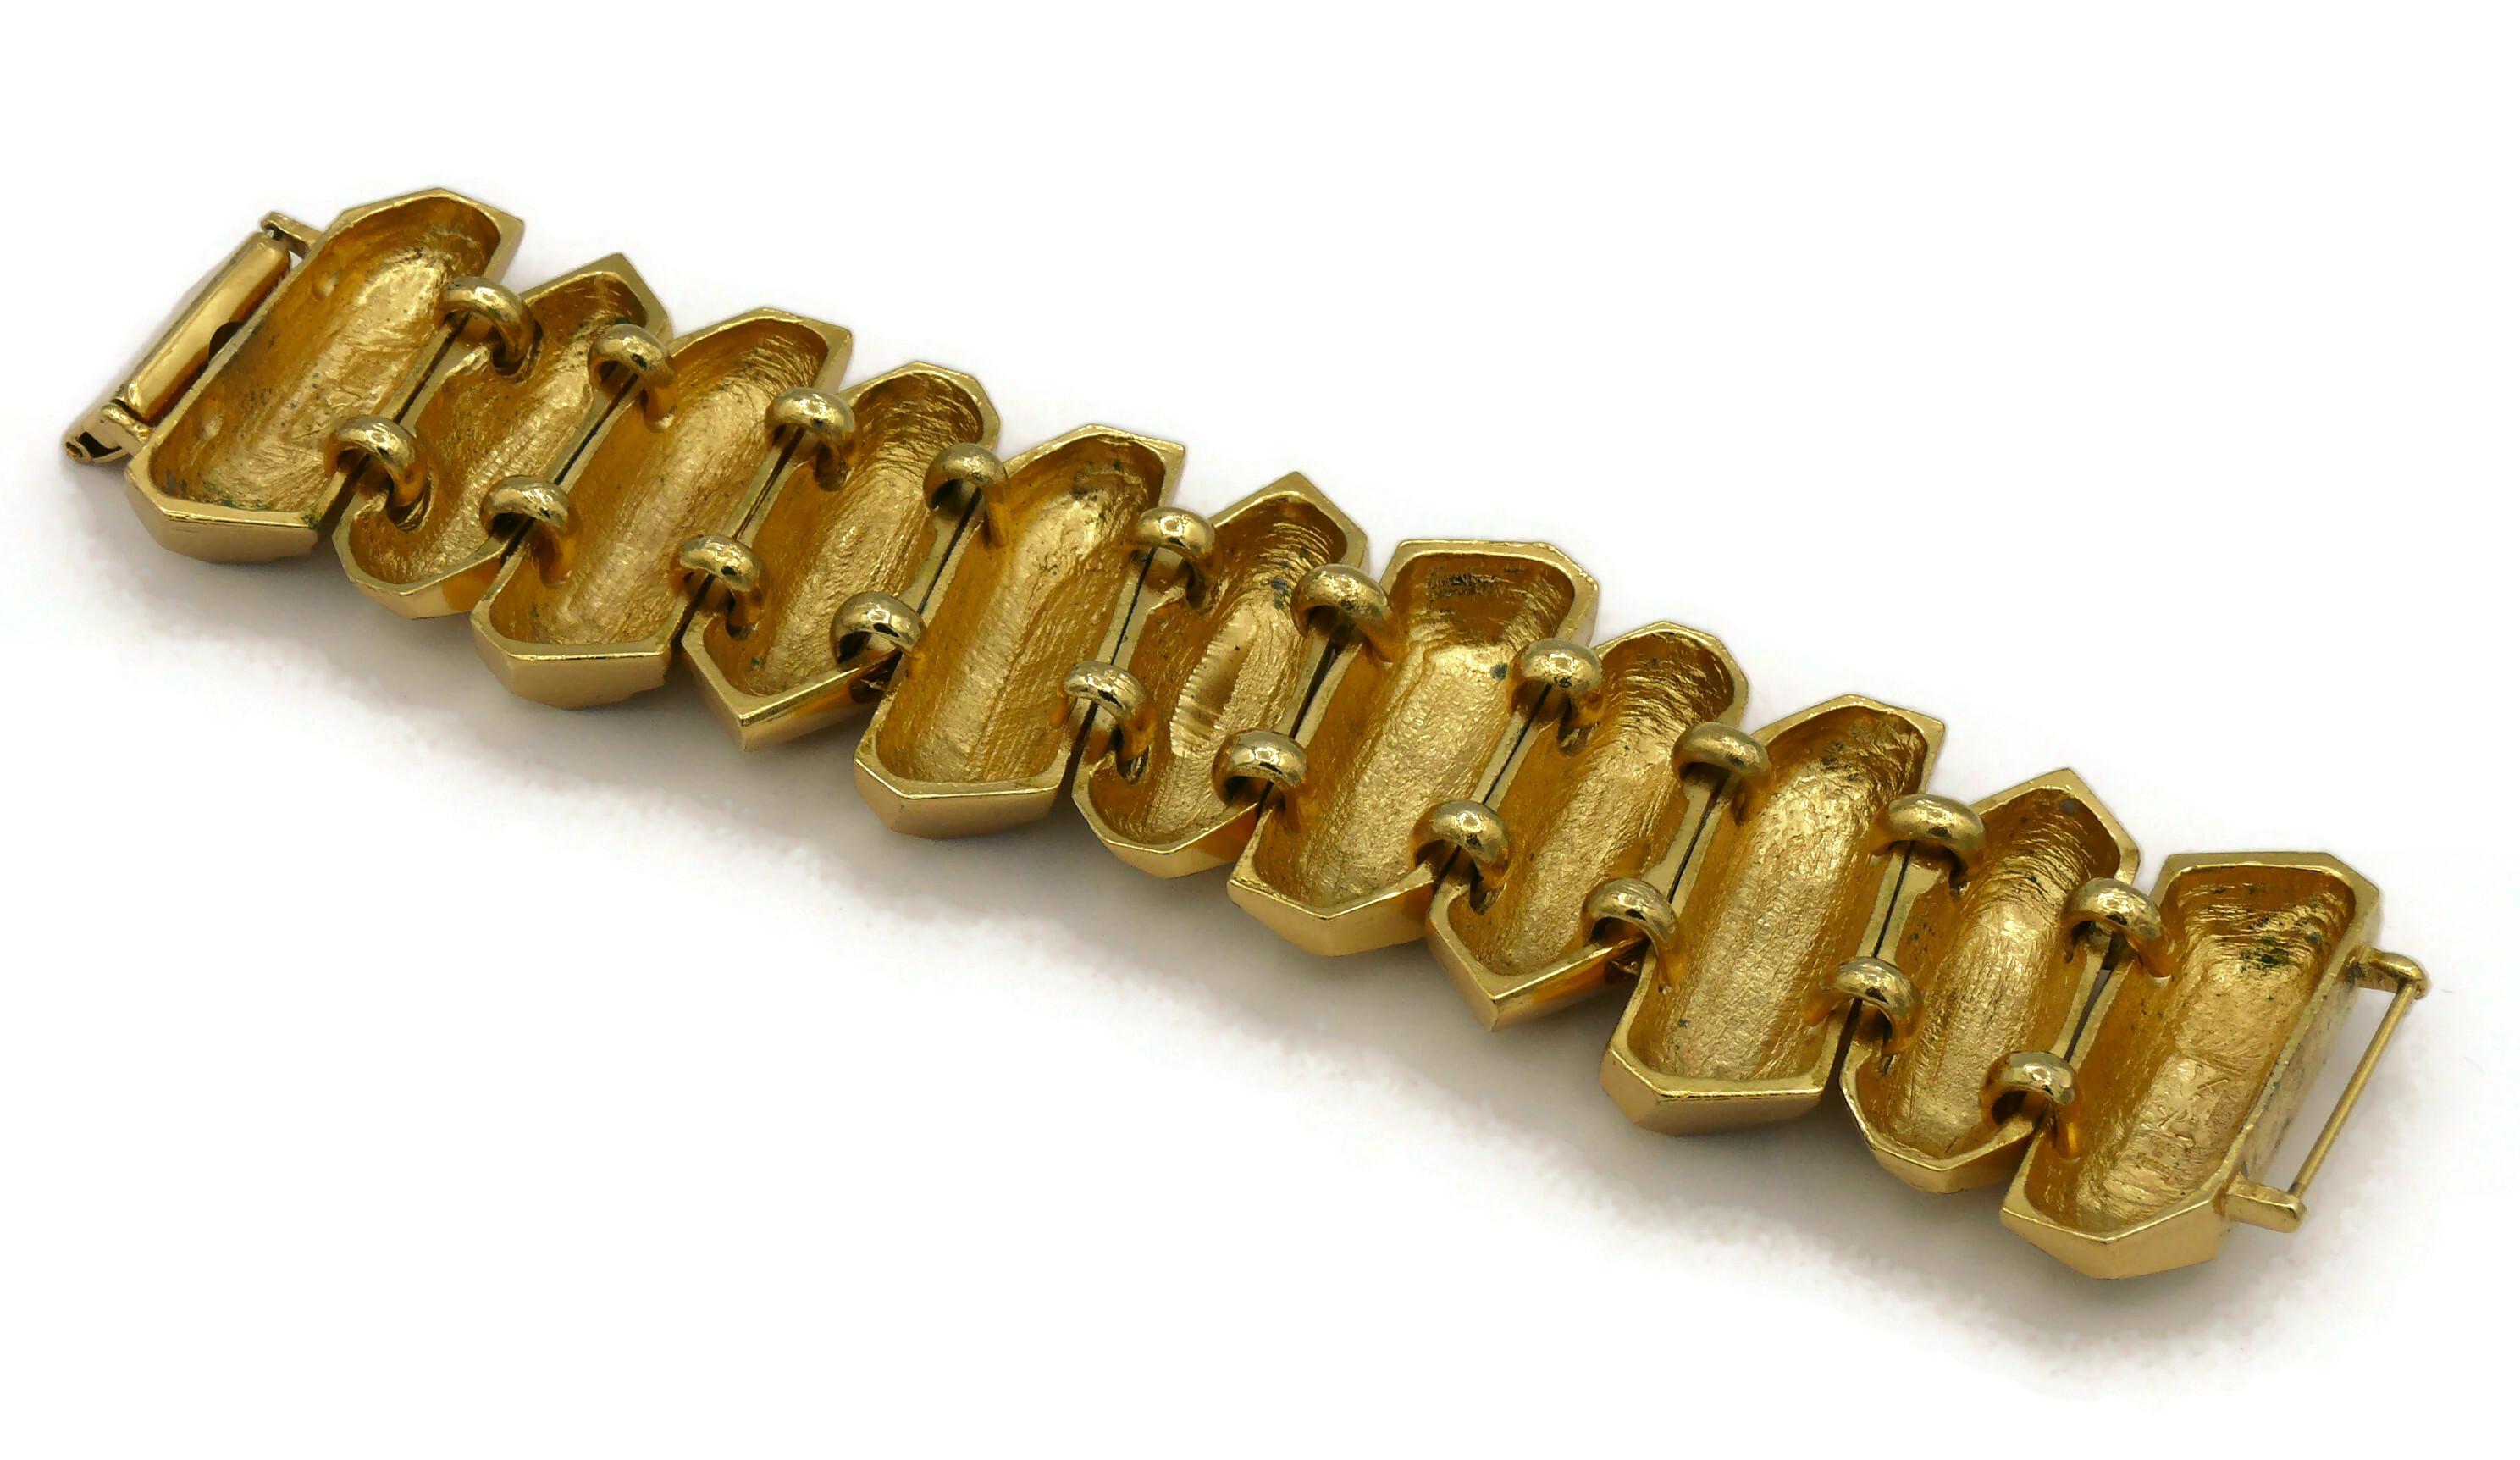 YVES SAINT LAURENT YSL Vintage Gold Tone Rock Crystal Prism Design Cuff Bracelet 8